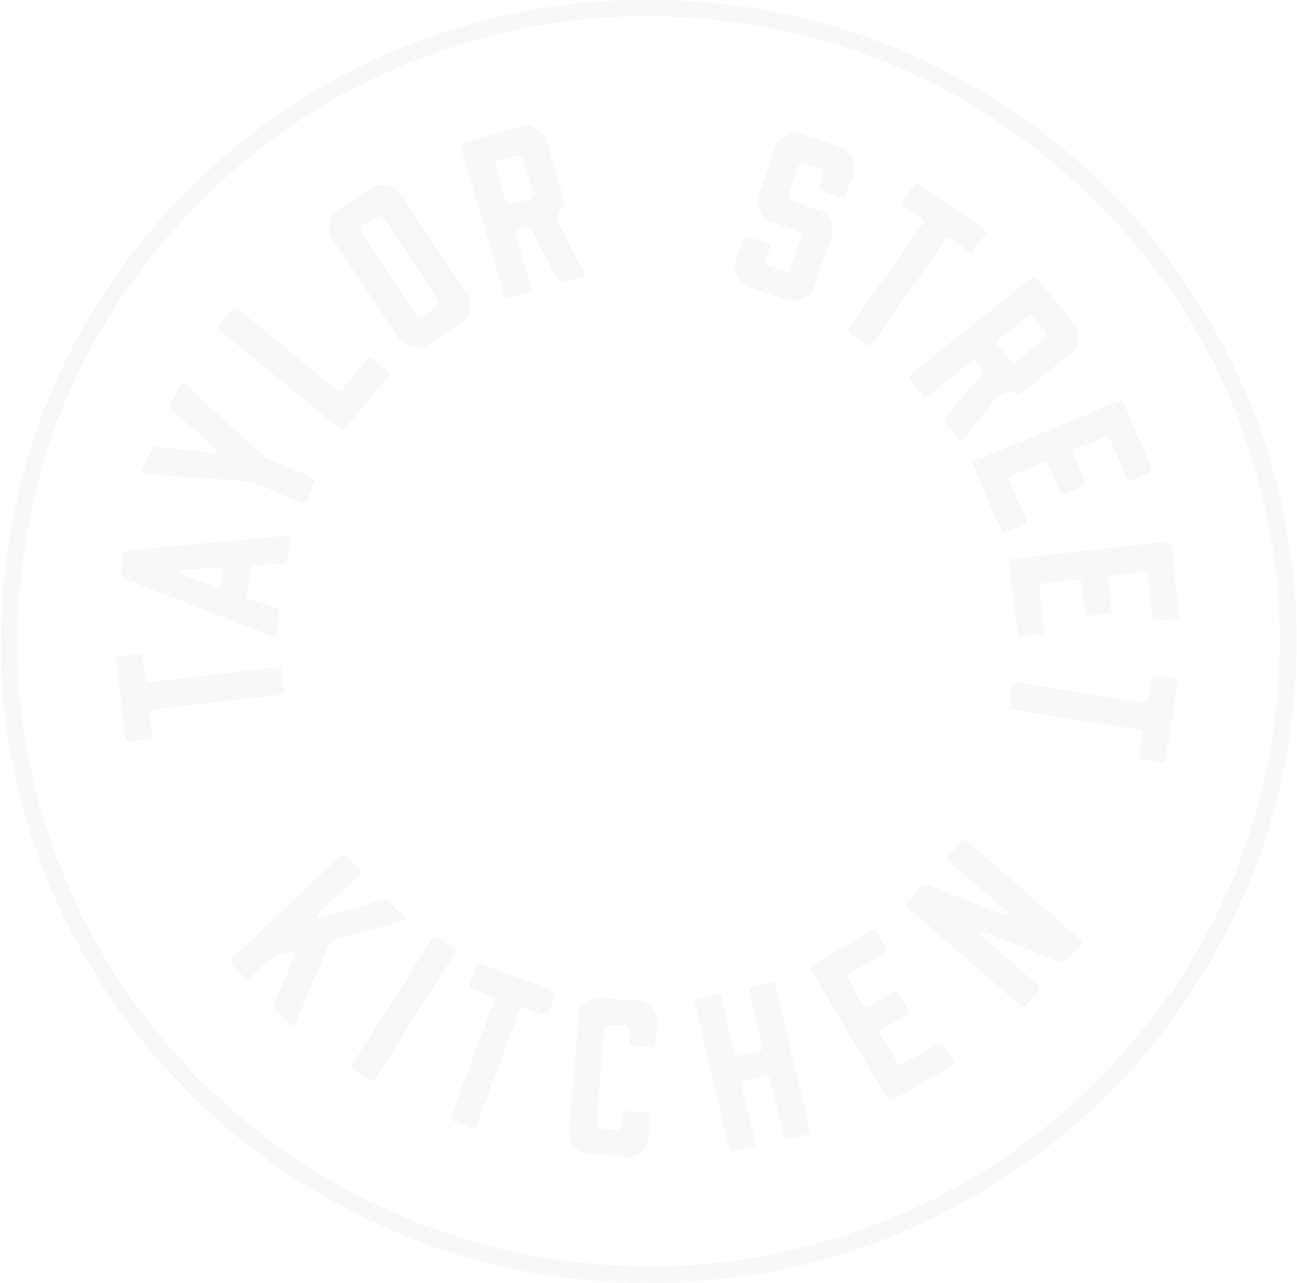 Taylor Street Kitchen